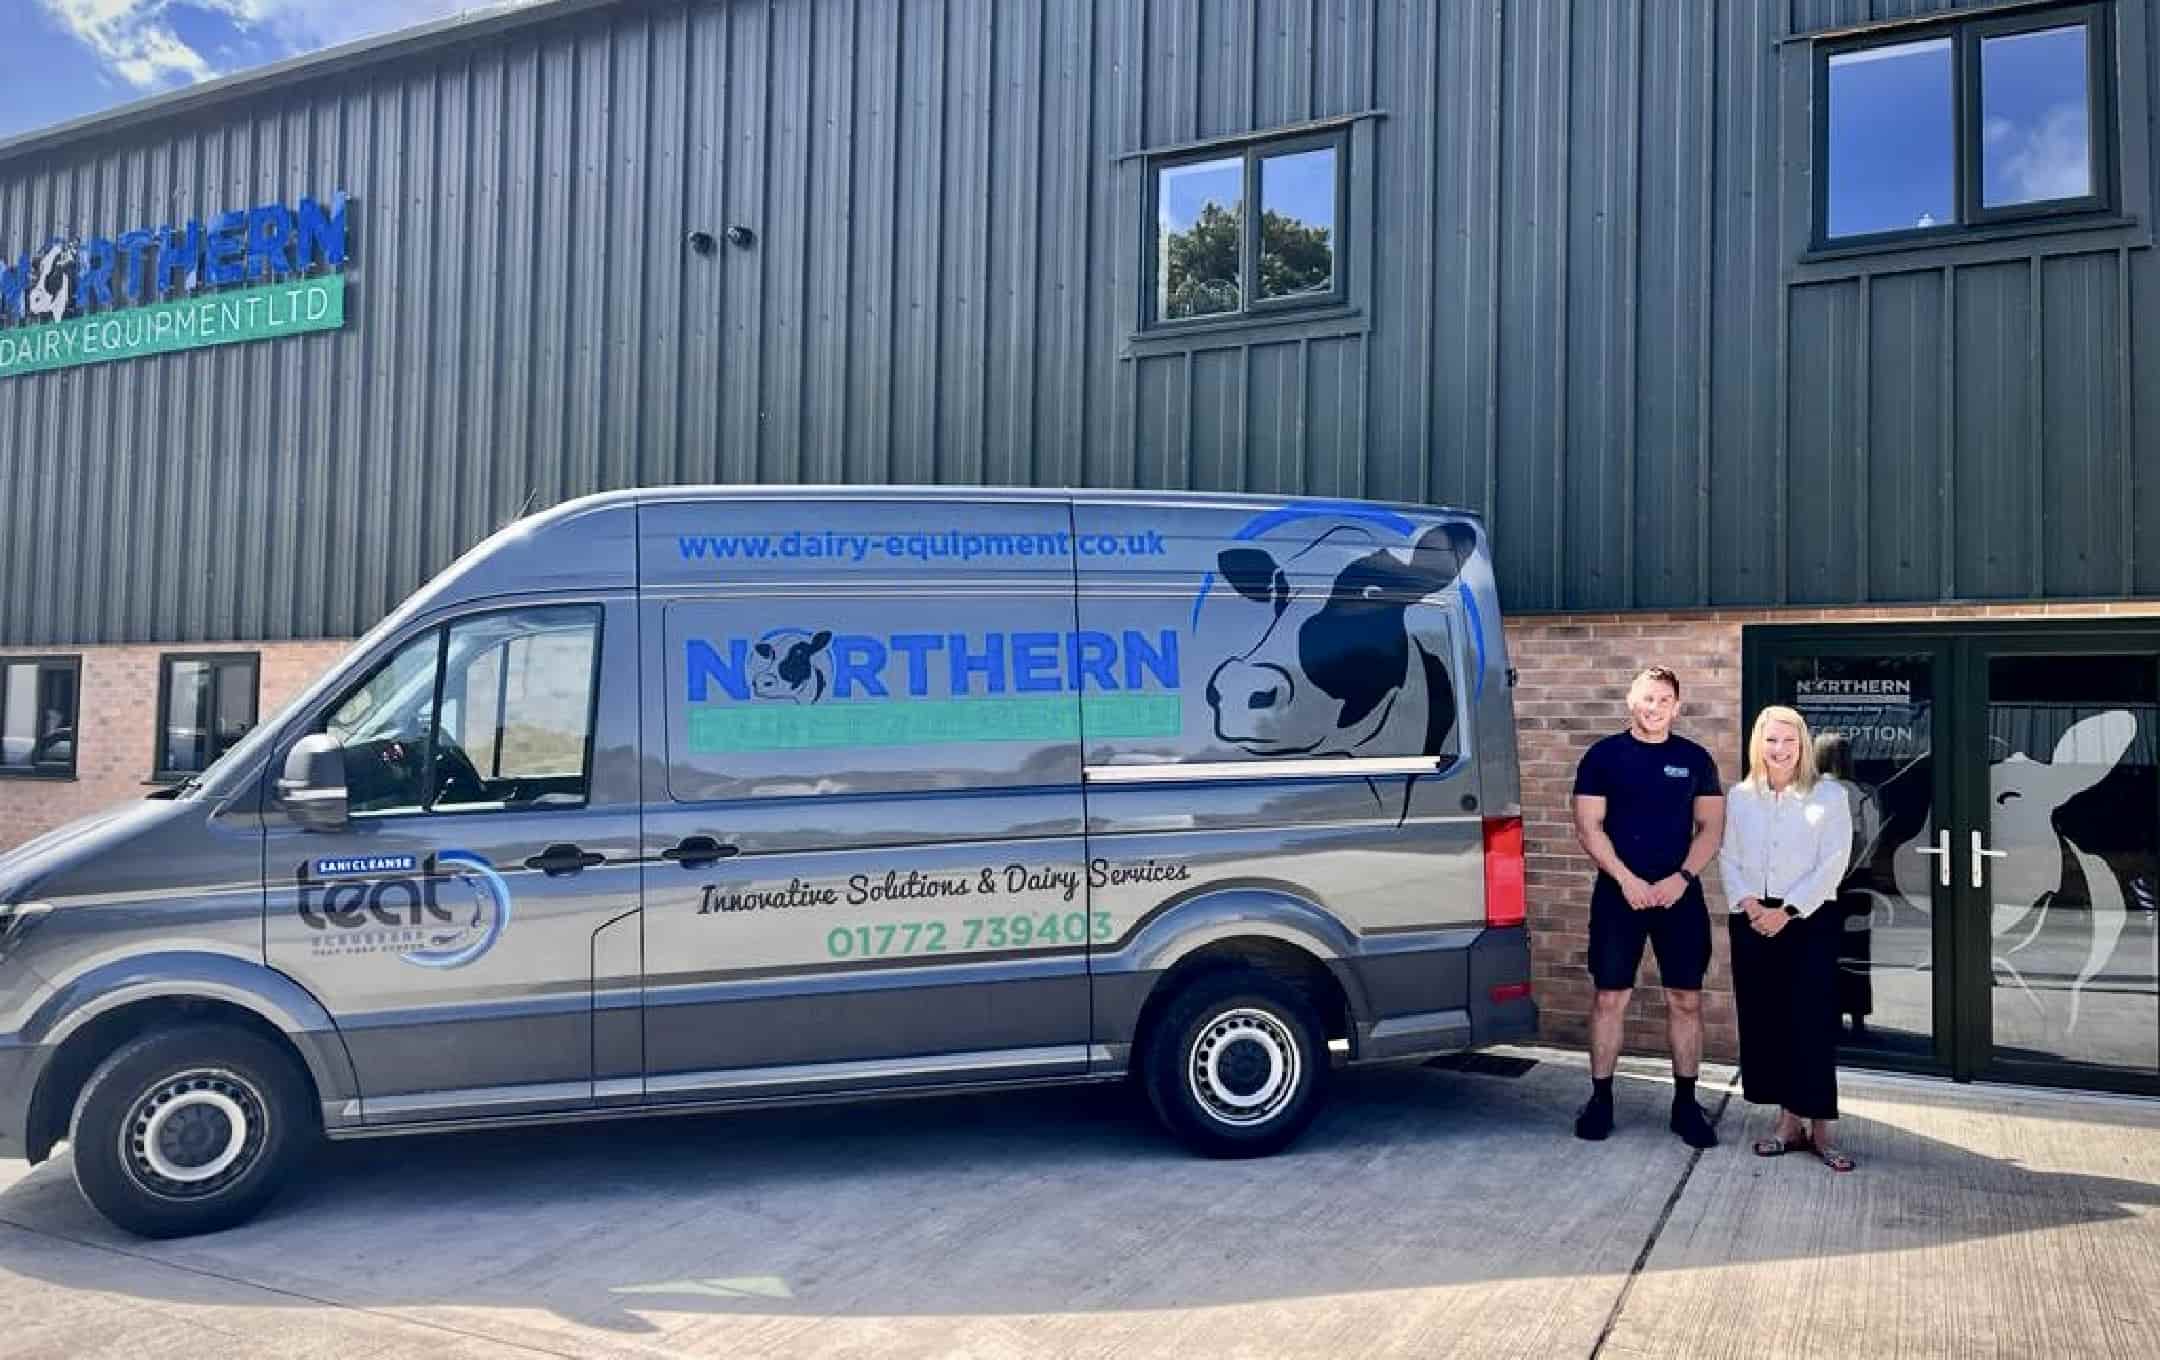 Northern Dairy Equipment - Mat Wiggans and Kimberley Thompson